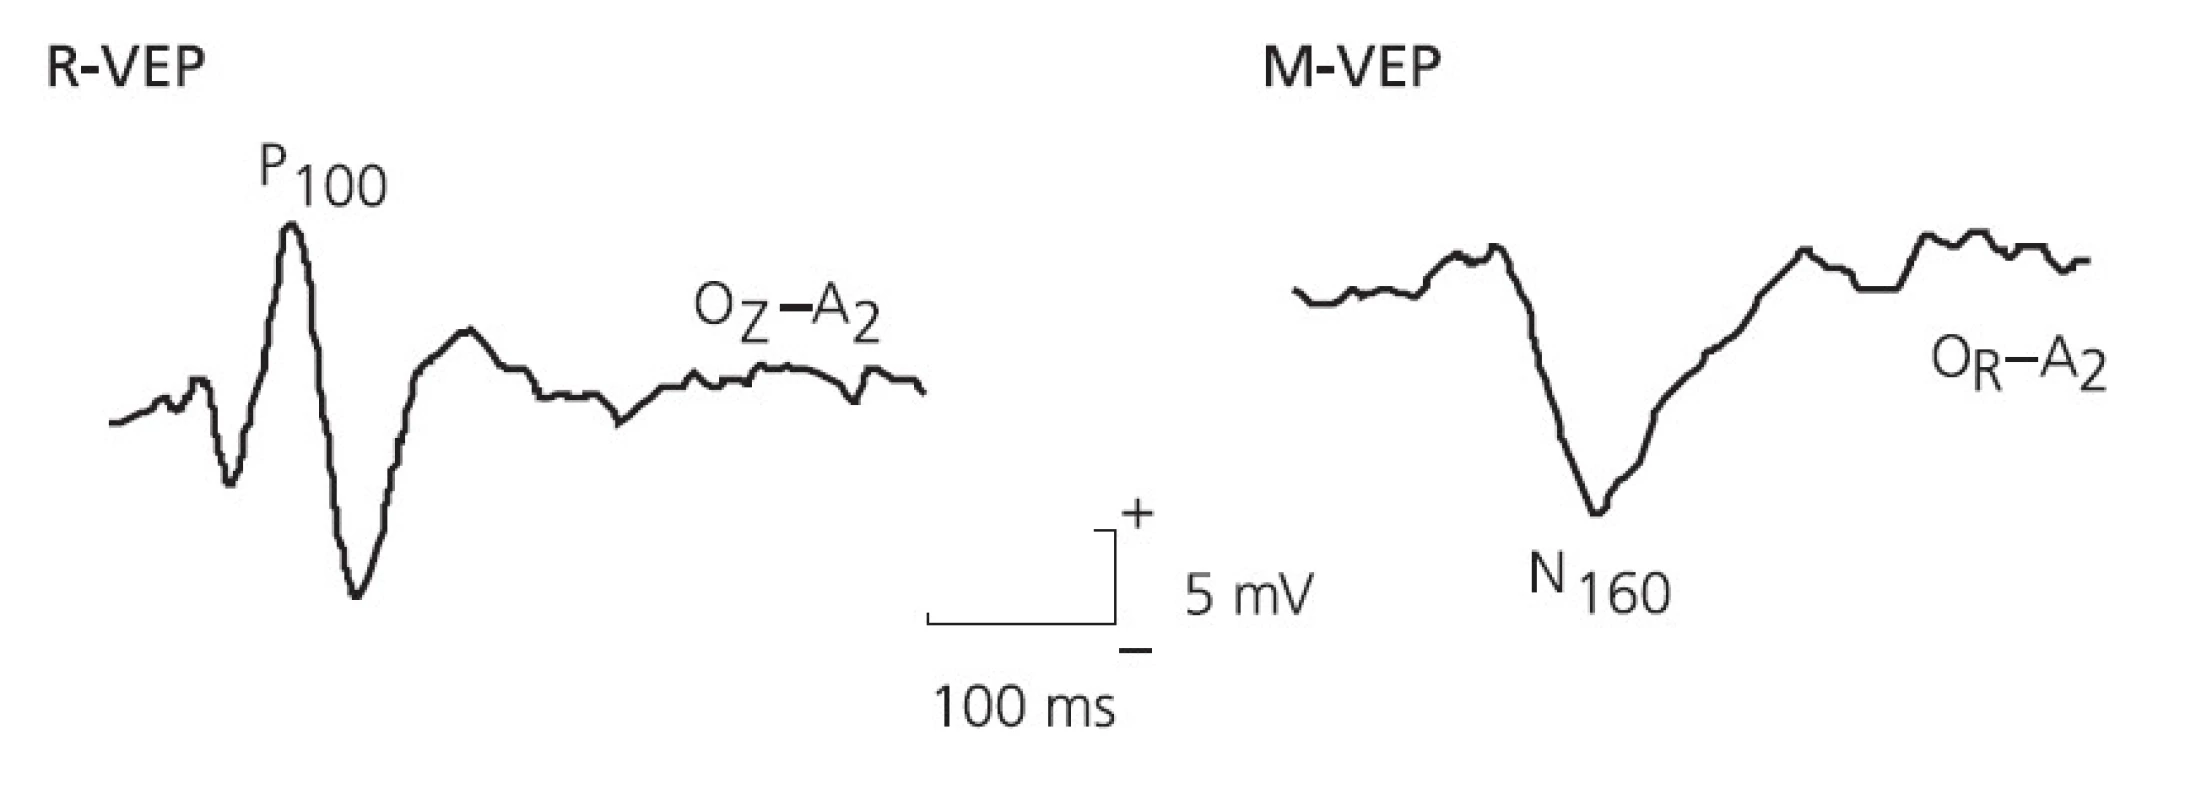 Typické příklady zrakových evokovaných odpovědí při stimulaci R-VEPs (P100 s maximem v Oz) a M-VEPs (N160 s maximem v Or nebo Ol).